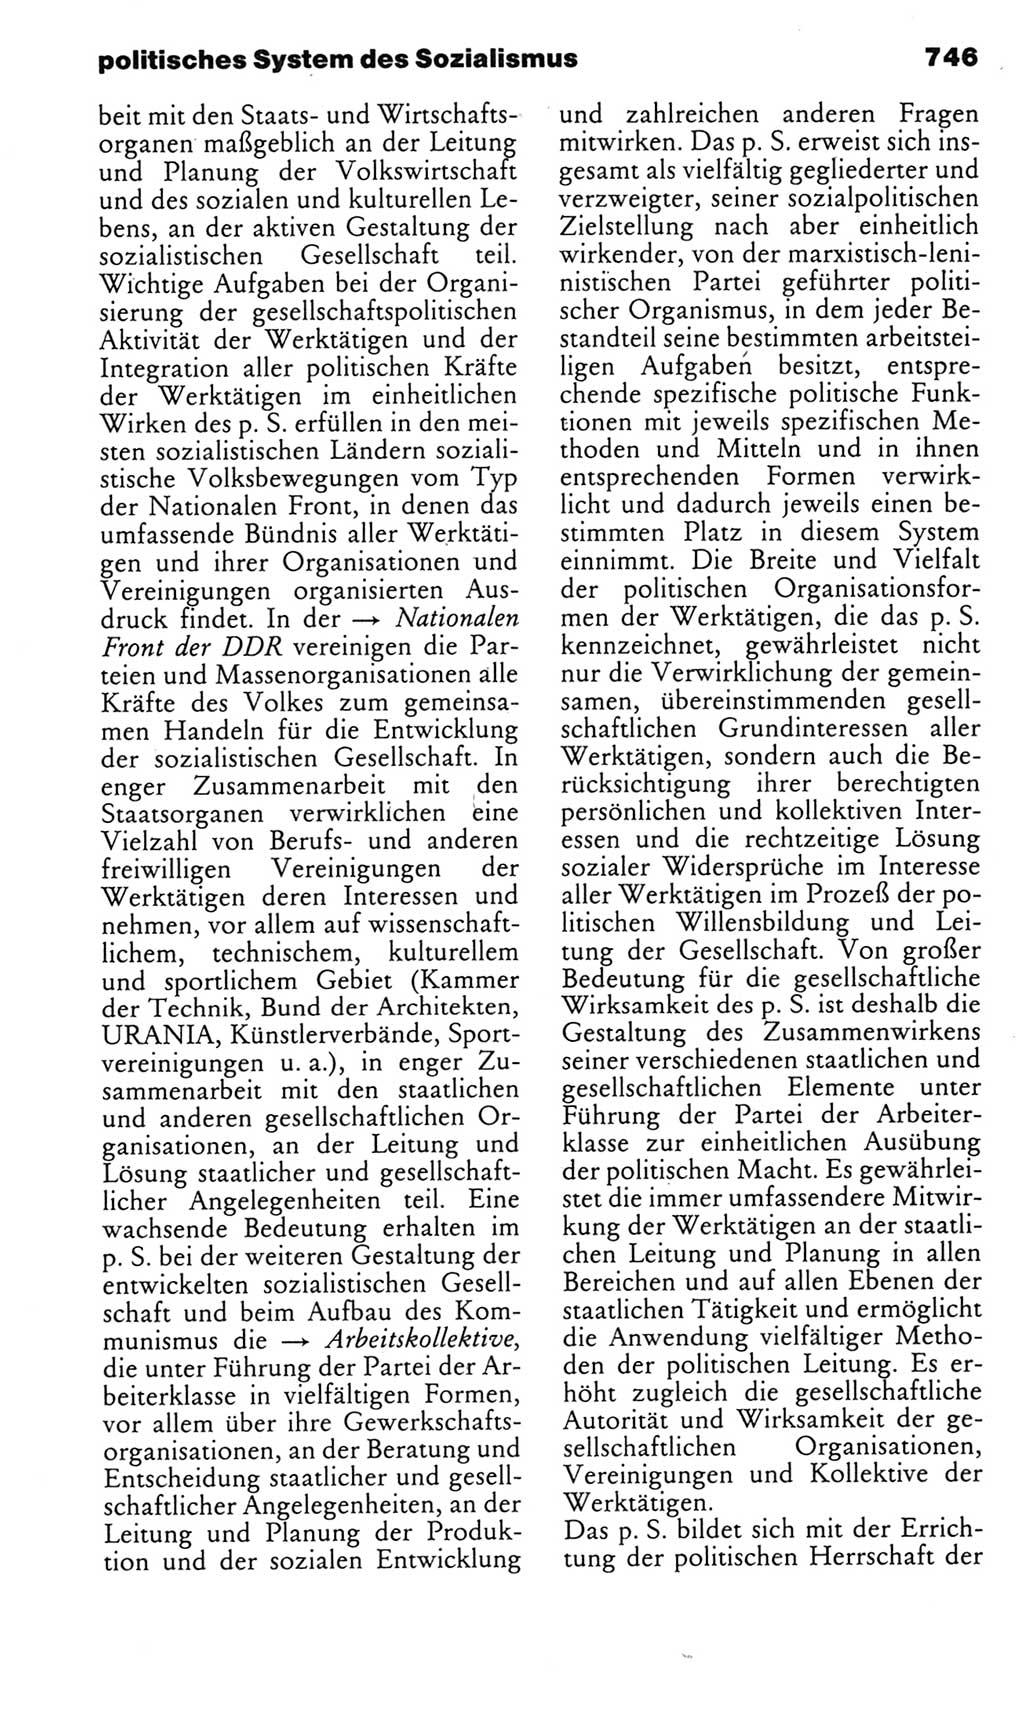 Kleines politisches Wörterbuch [Deutsche Demokratische Republik (DDR)] 1985, Seite 746 (Kl. pol. Wb. DDR 1985, S. 746)